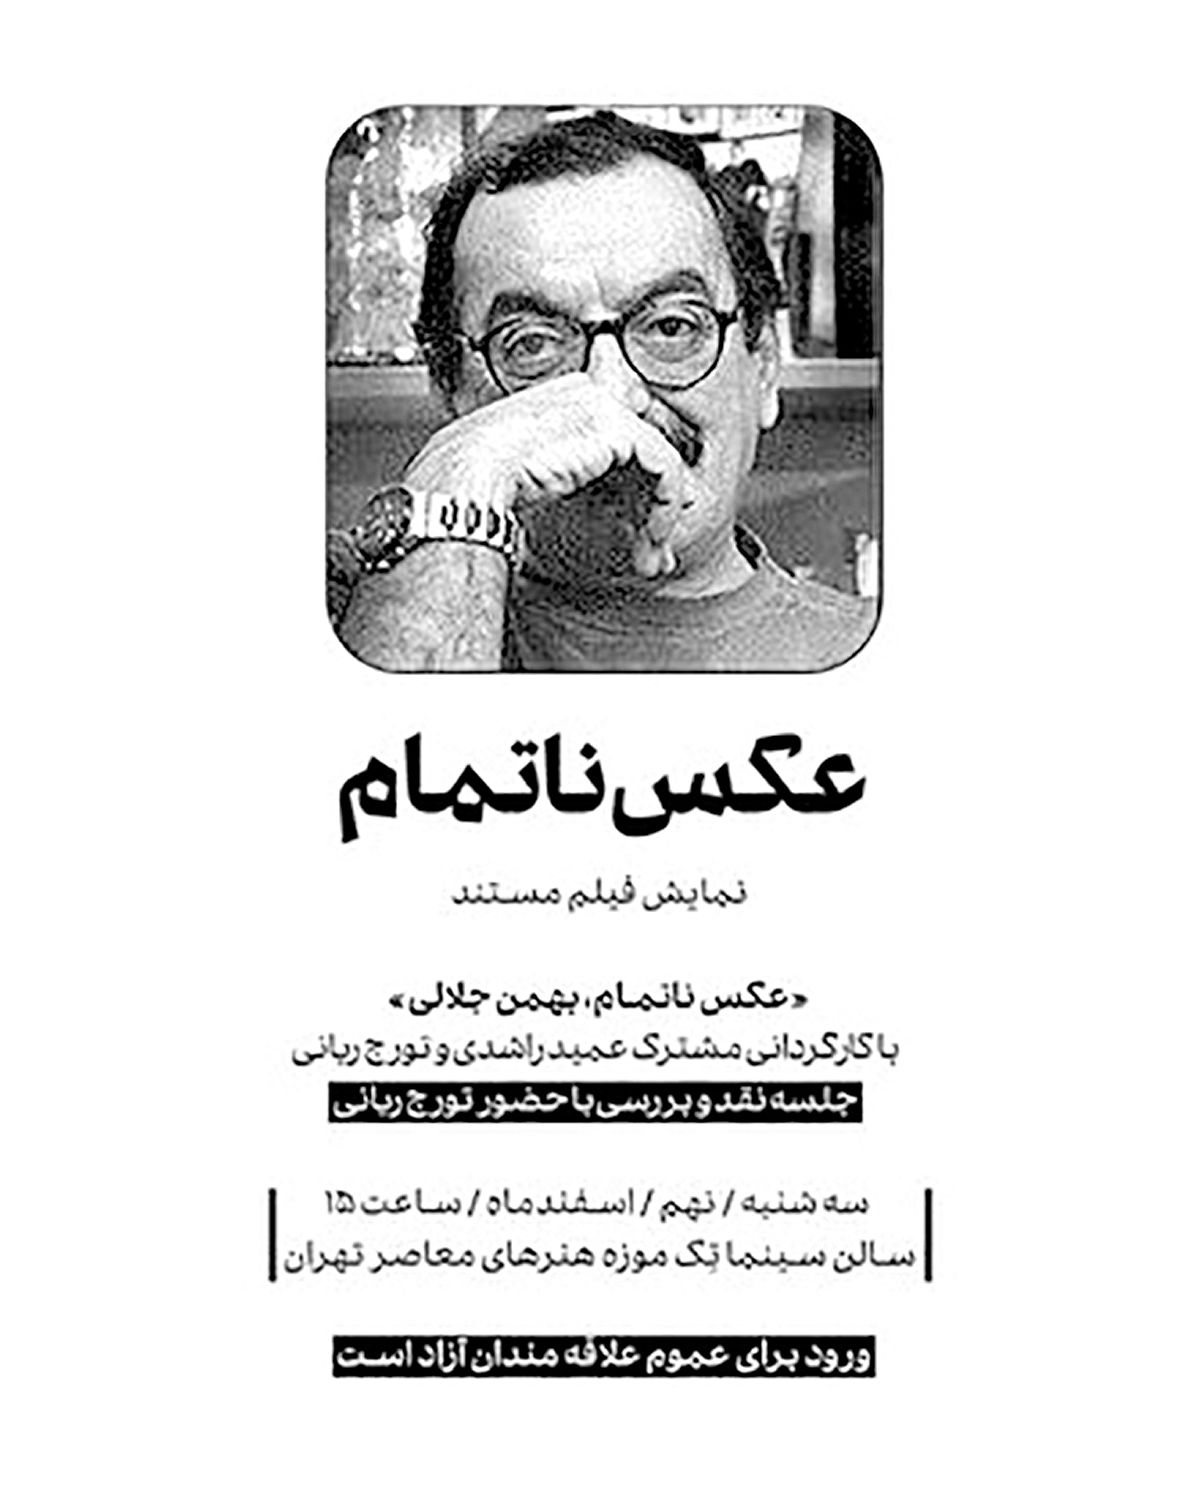 نمایش مستند زندگی بهمن جلالی